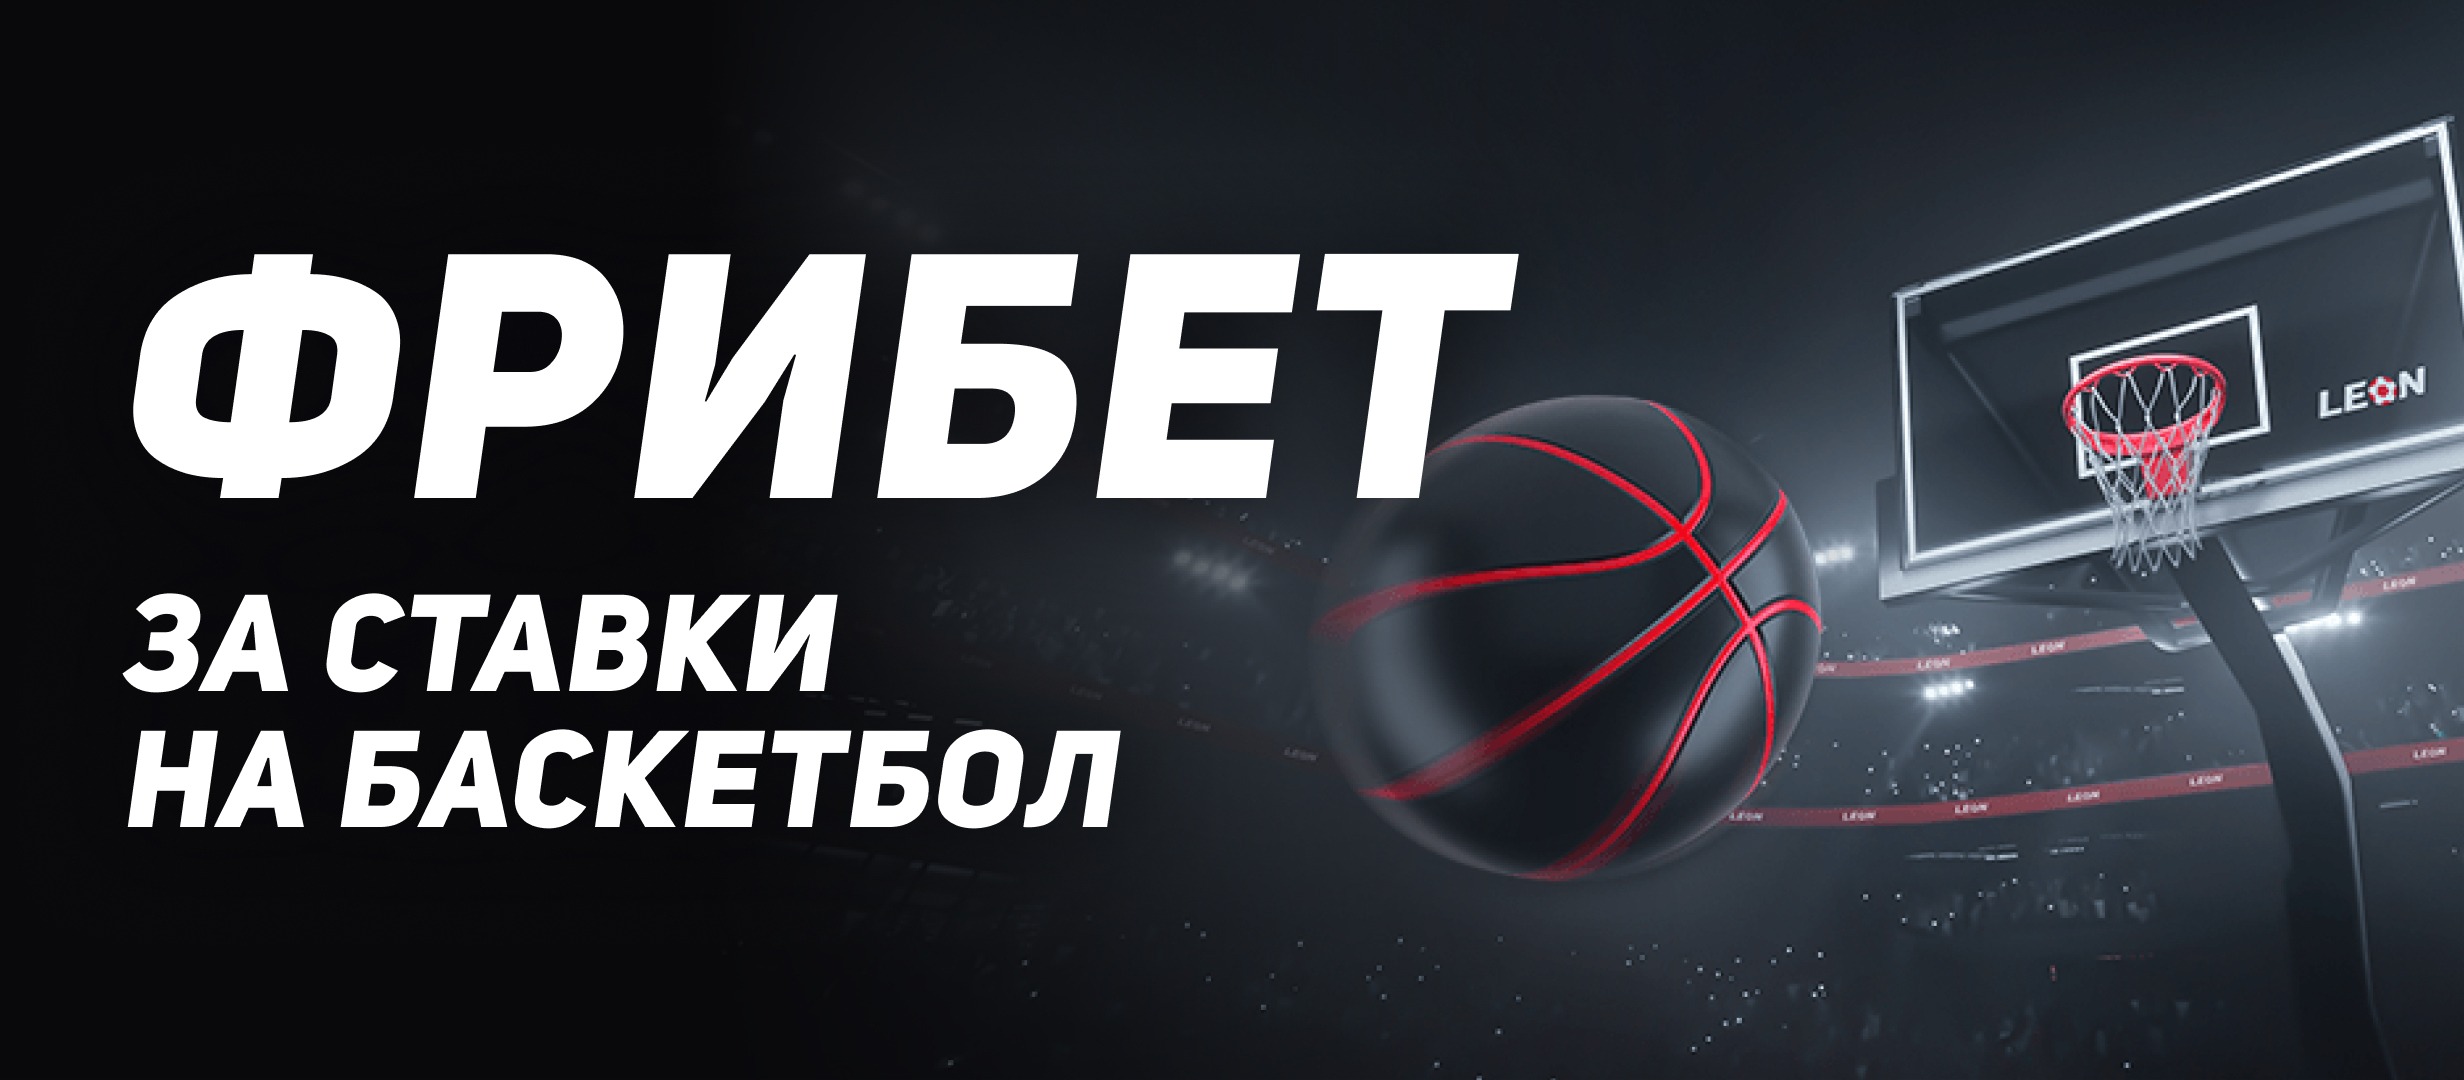 BK Leon razygryvaet fribety do 20 000 rublej za stavki na basketbol